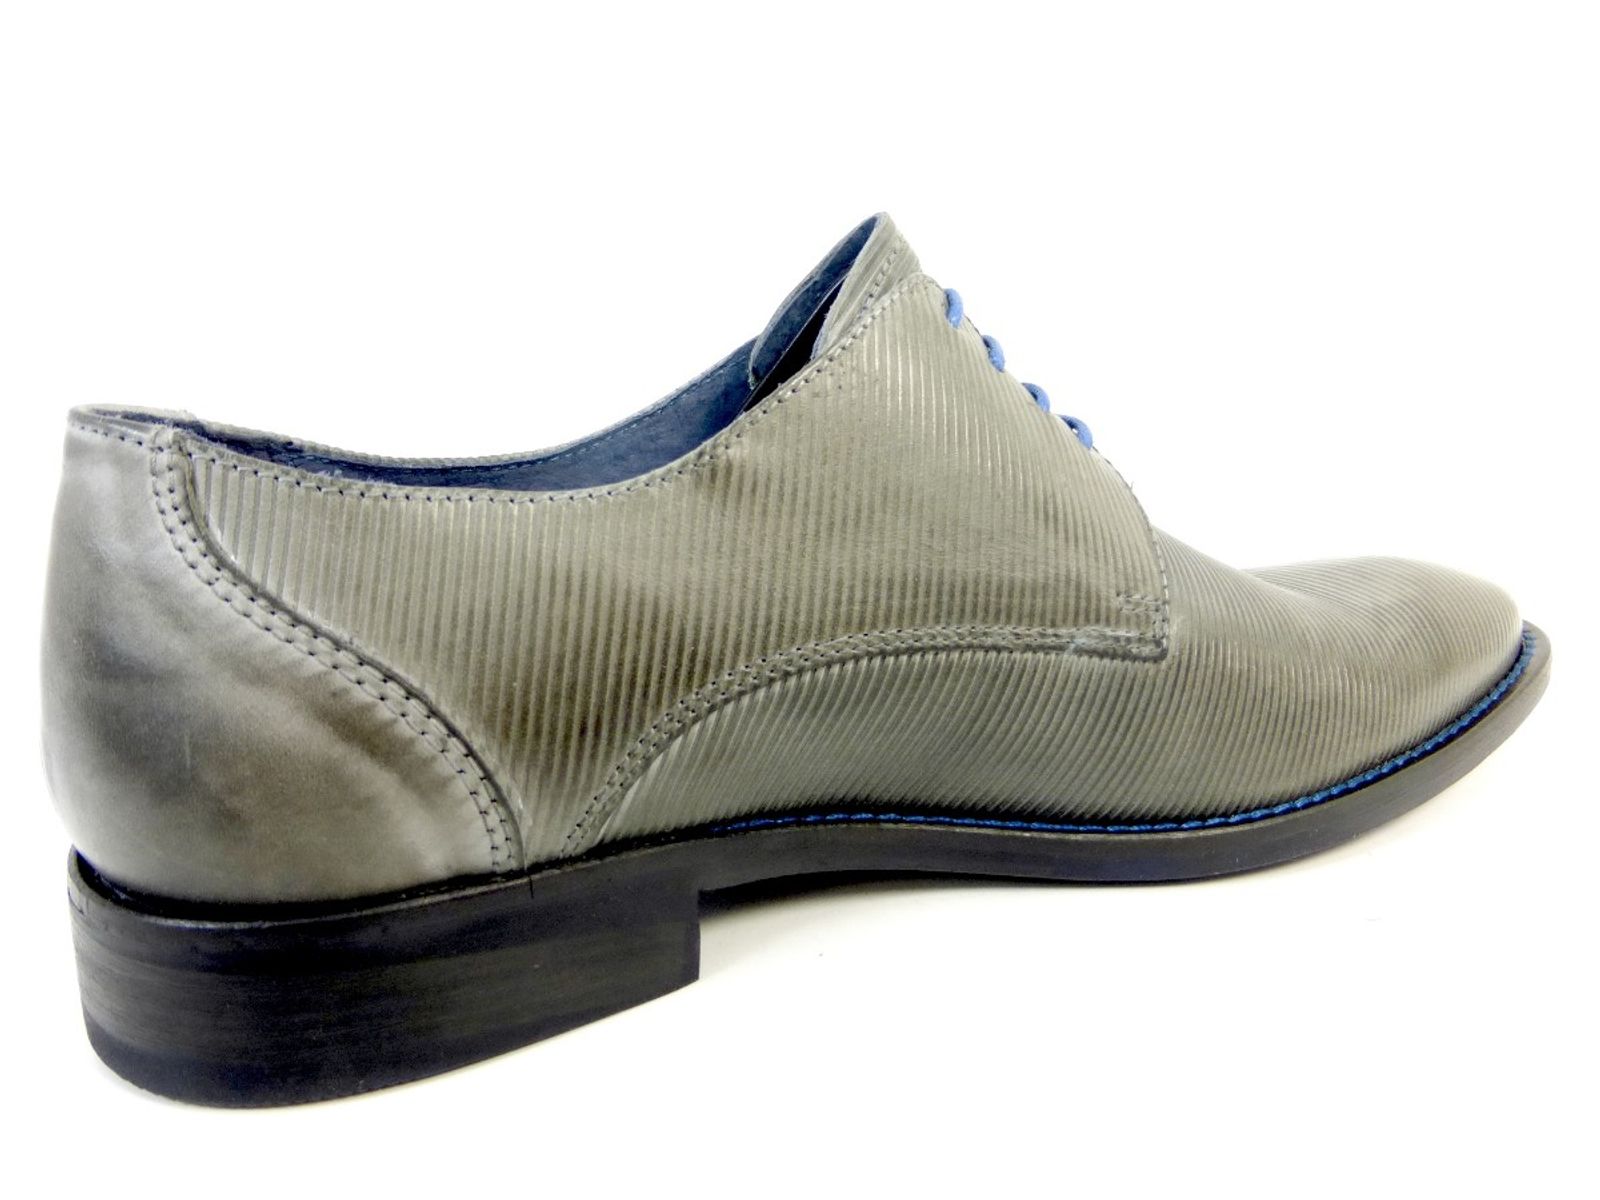 Schuh von Calzaturificio, 43